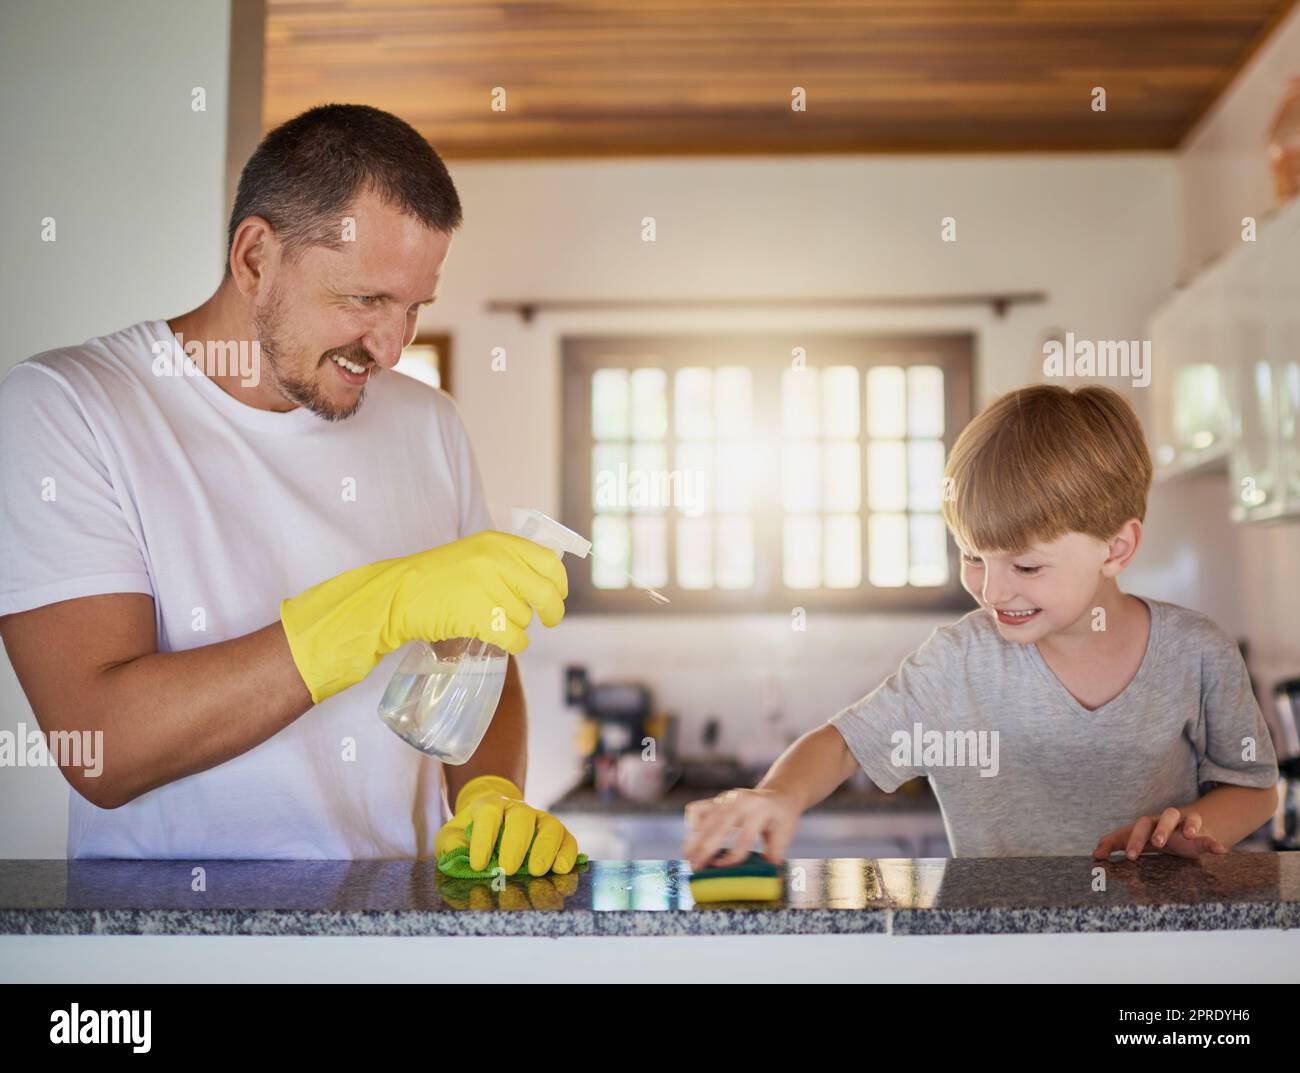 Der Unterricht für die Verantwortung von Kindern beginnt schon in jungen Jahren. Ein Vater und sein kleiner Sohn erledigen gemeinsam zu Hause Aufgaben. Stockfoto